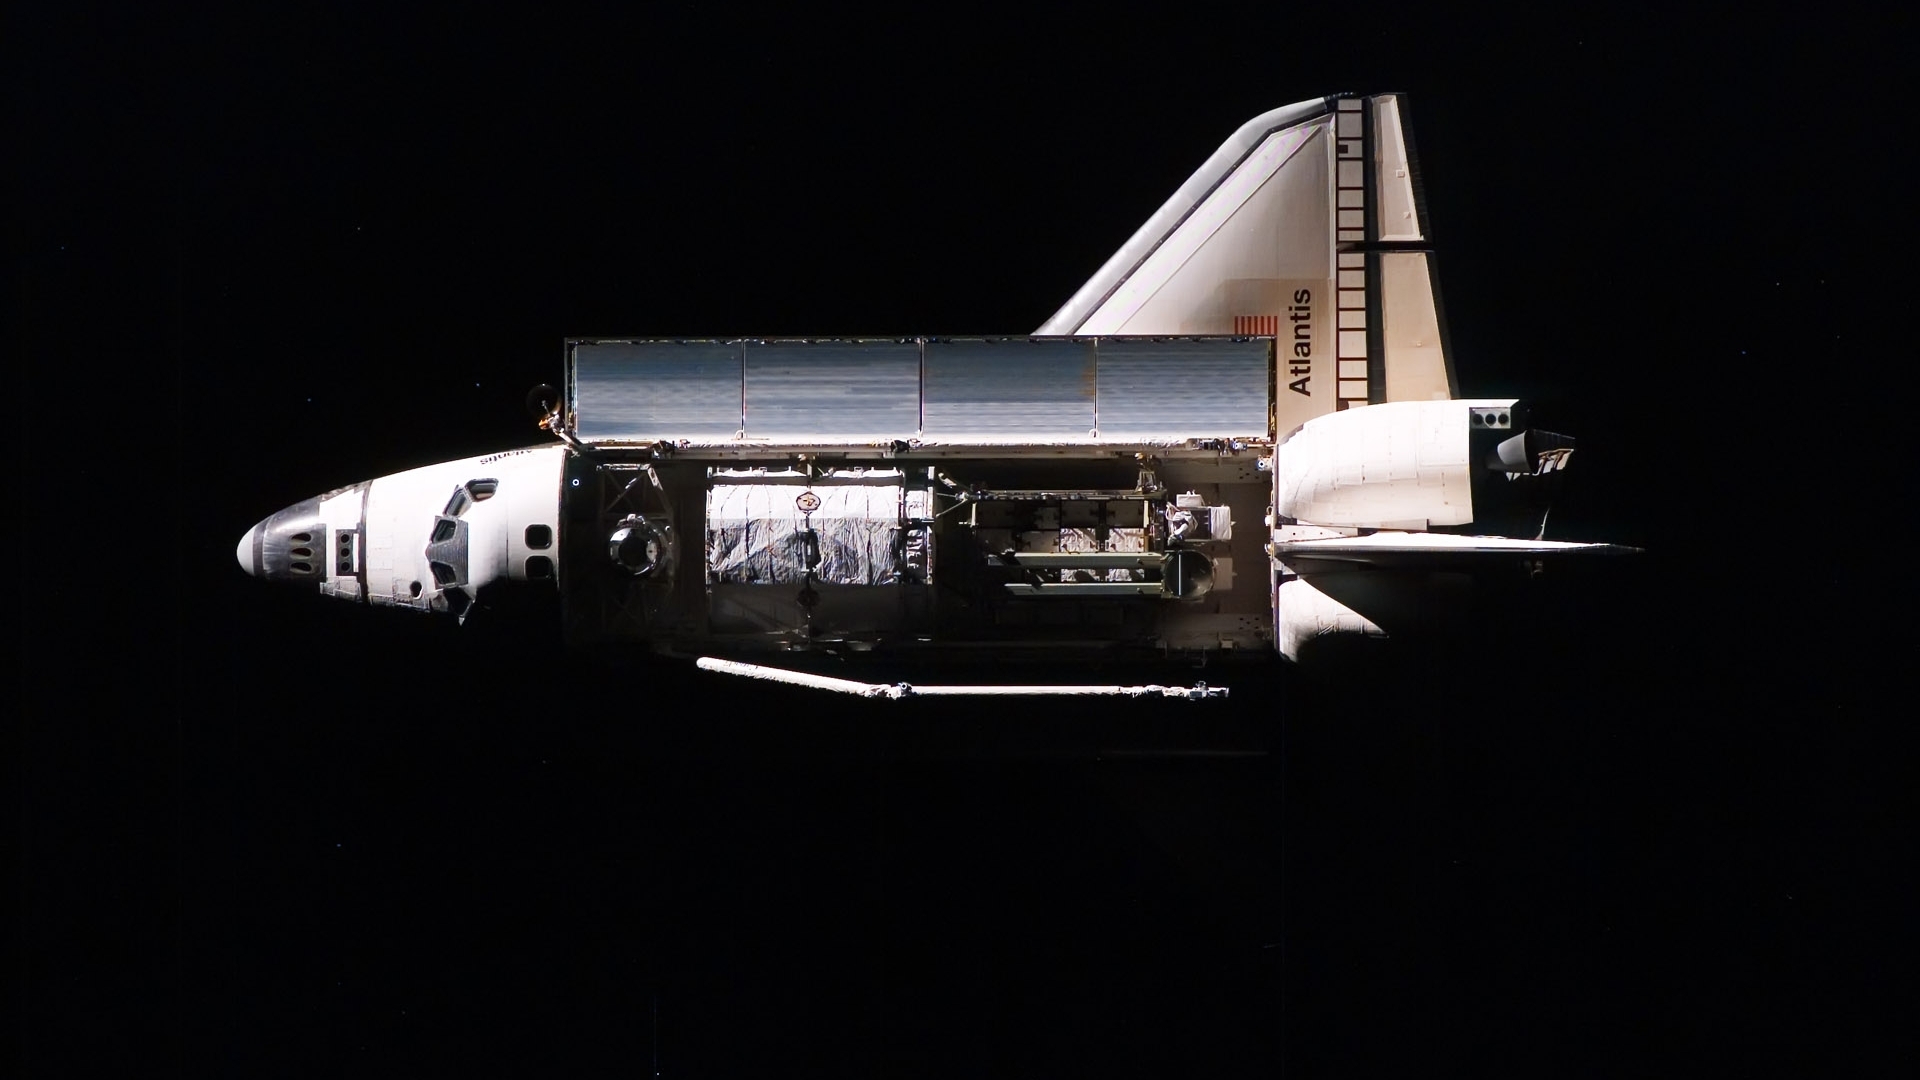 壁紙 19x1080 船 Space Shuttle Atlantis Nasa 宇宙空間 ダウンロード 写真